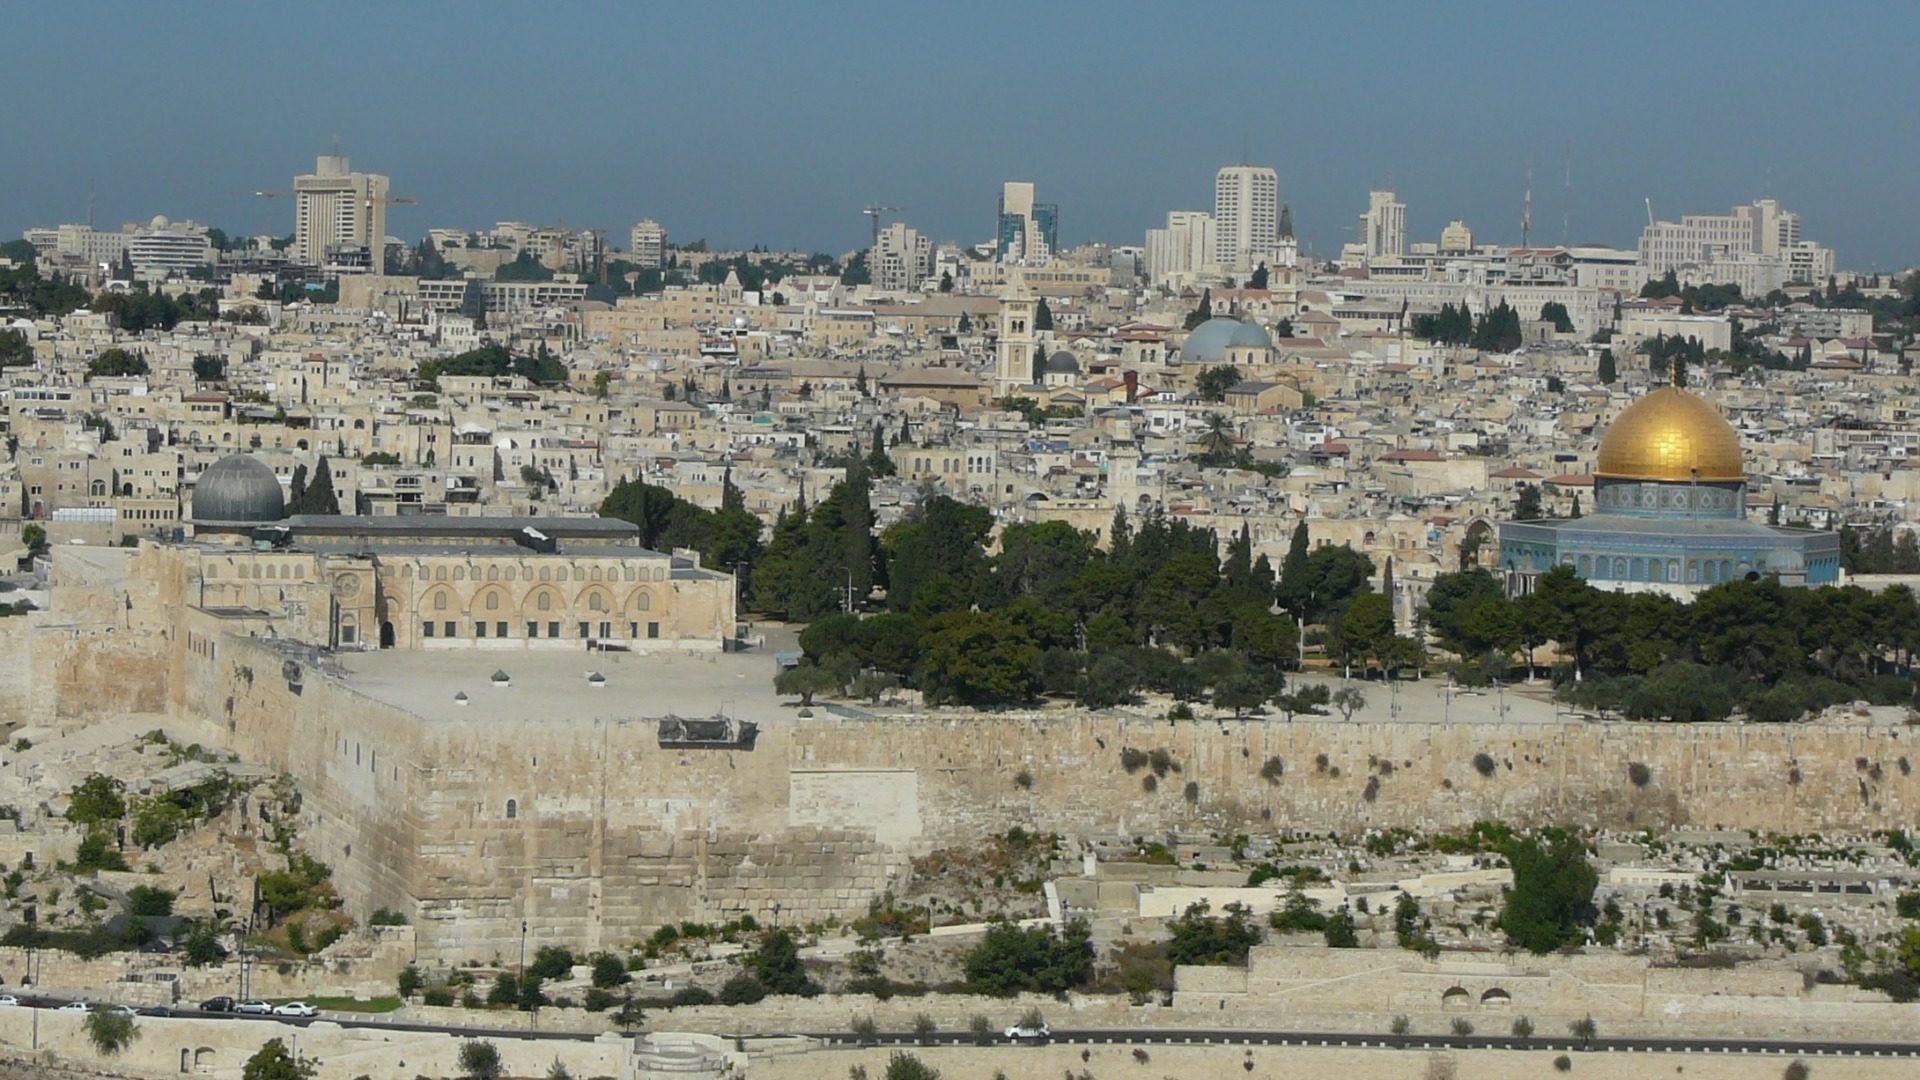 L'Eglise soutient l'accès aux lieux sacrés des trois religions à Jérusalem. (Photo: Flickr/Cycling ManCC BY-NC-ND 2.0)